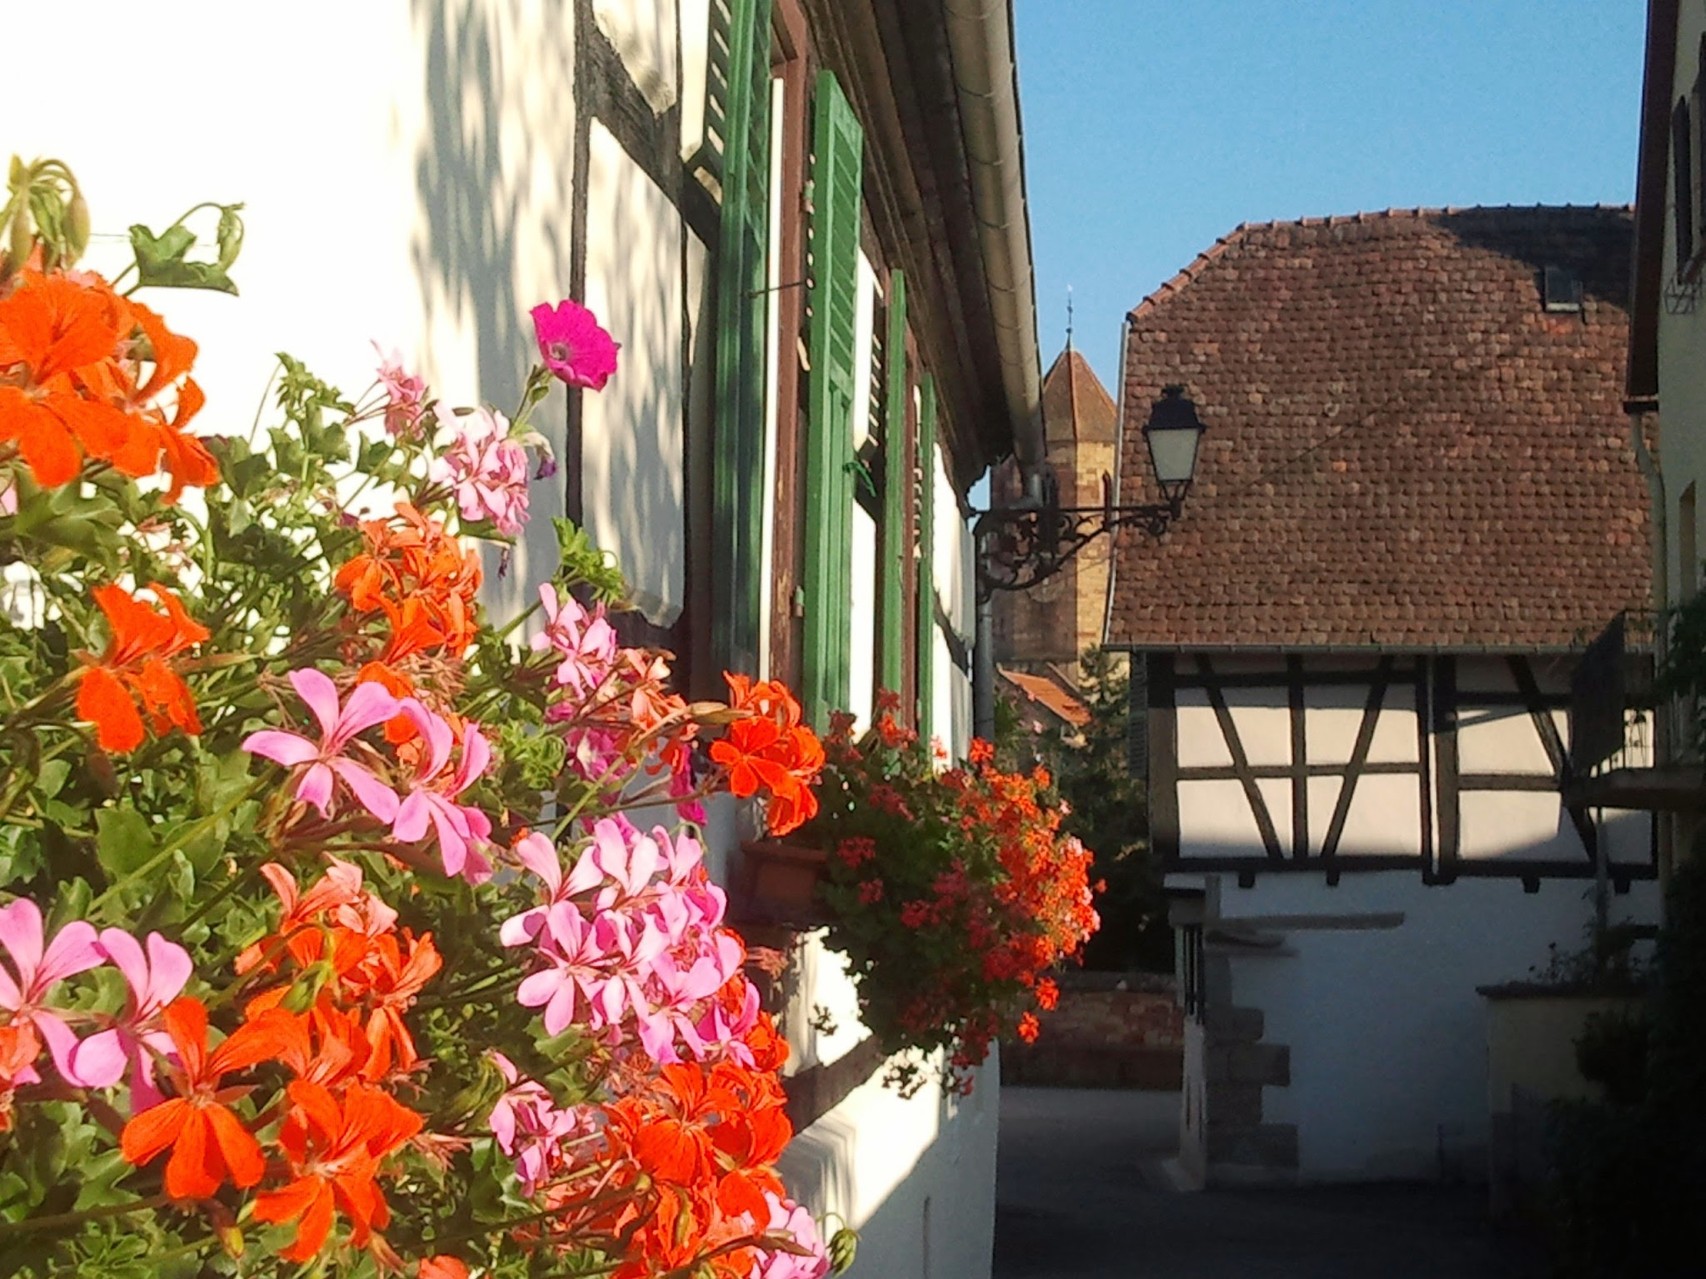 Maisons à colombages et ruelles ombragées de Rosheim - Gite du Leimen en Alsace